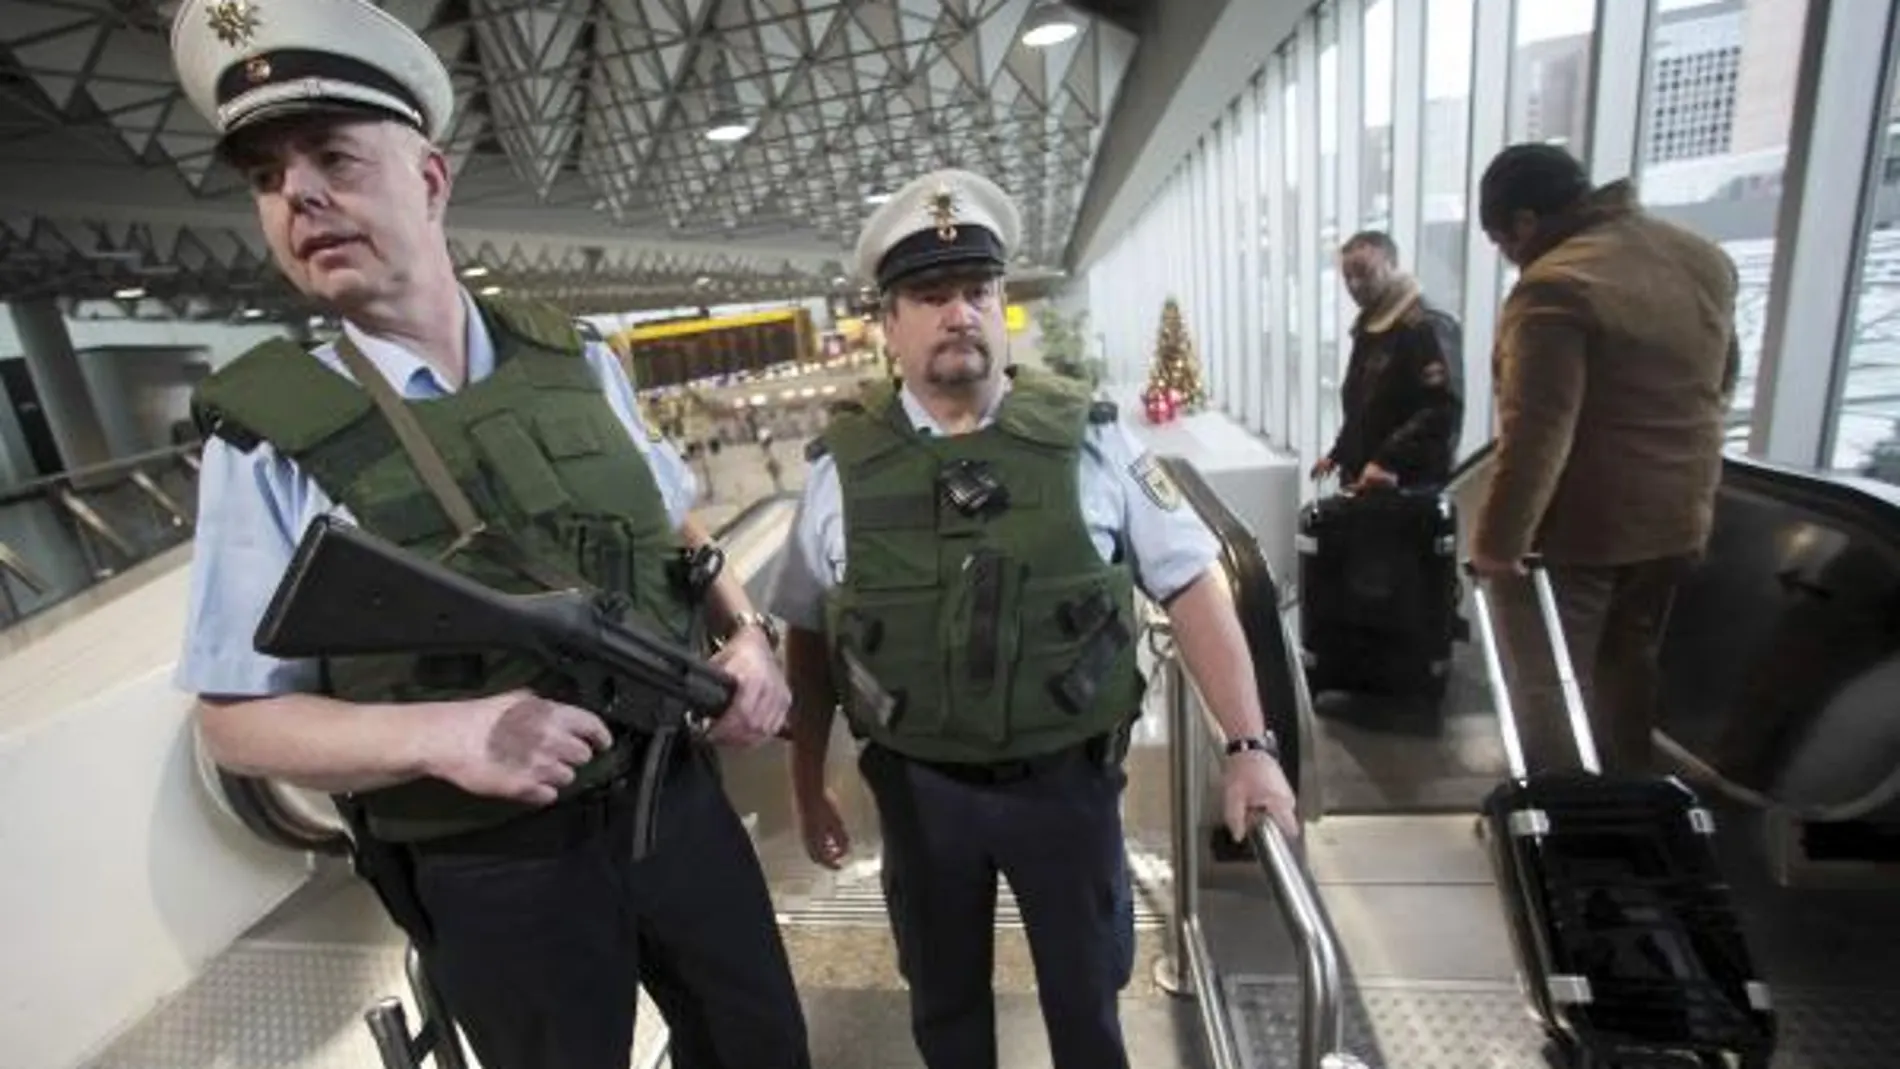 Dos policías patrullan el aeropuerto de Fránkfurt en una imagen de archivo